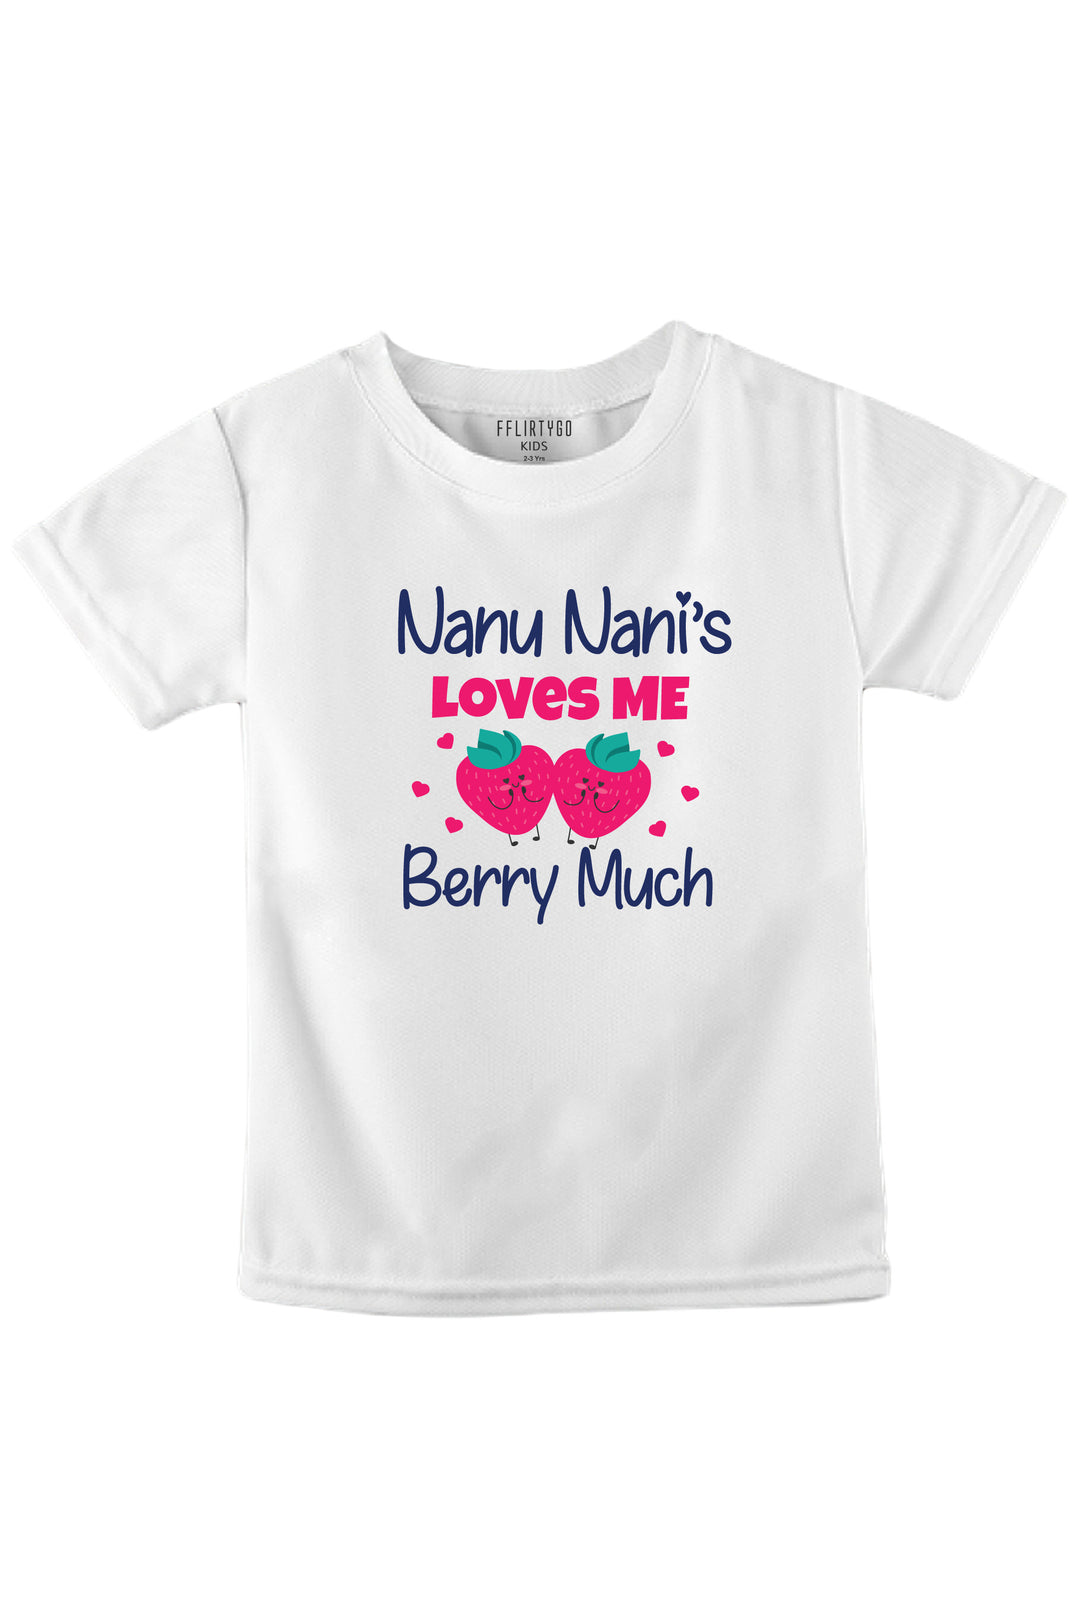 Nanu Nani Love Me Berry Much